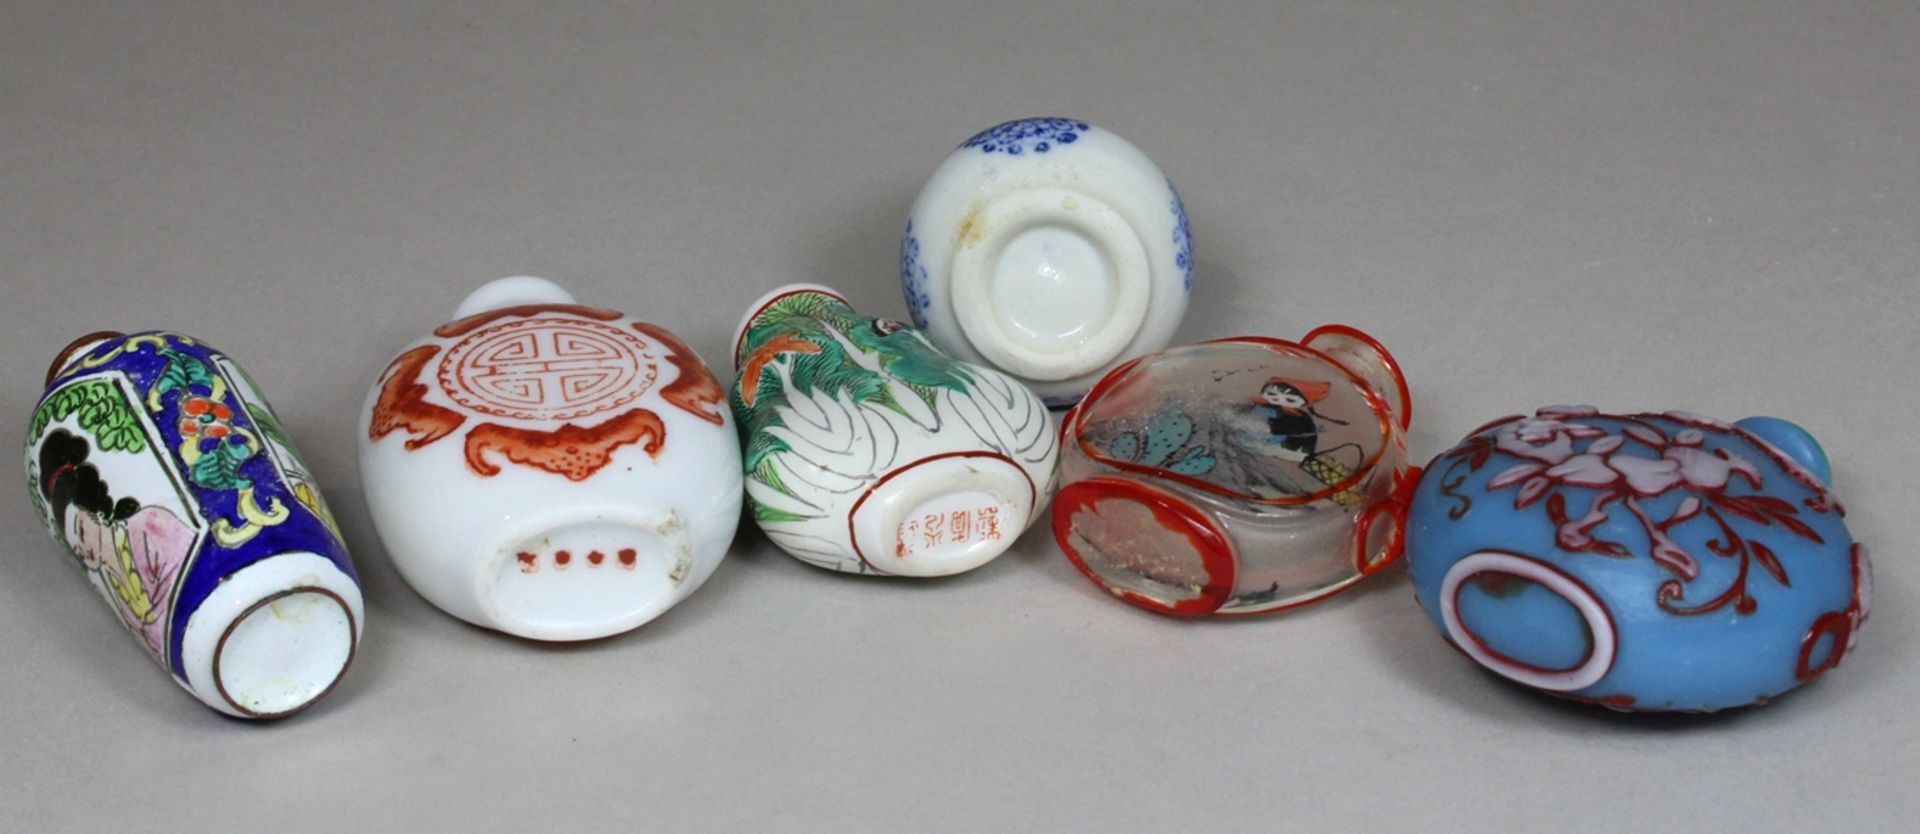 Sechs Snuff Bottles, China, Porzellan, Glas und Email auf Kupfer, handbemalt, chinesische Motive, e - Bild 3 aus 3